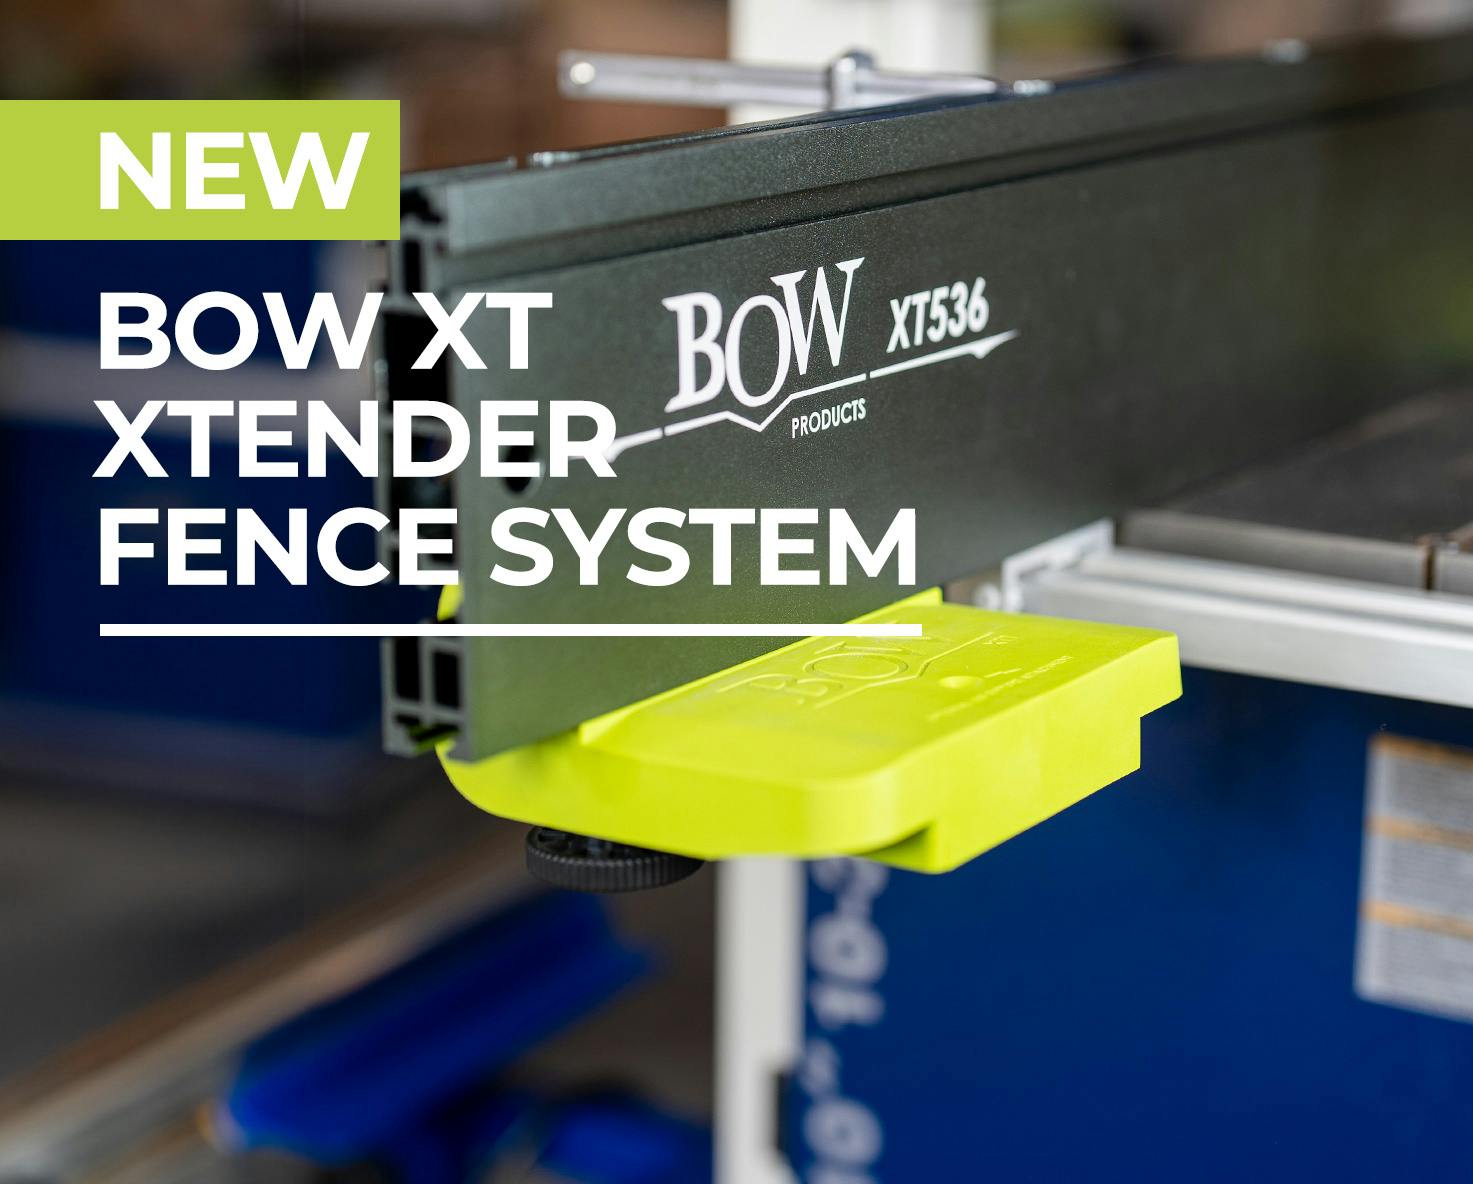 BOW XT Xtender Fence System